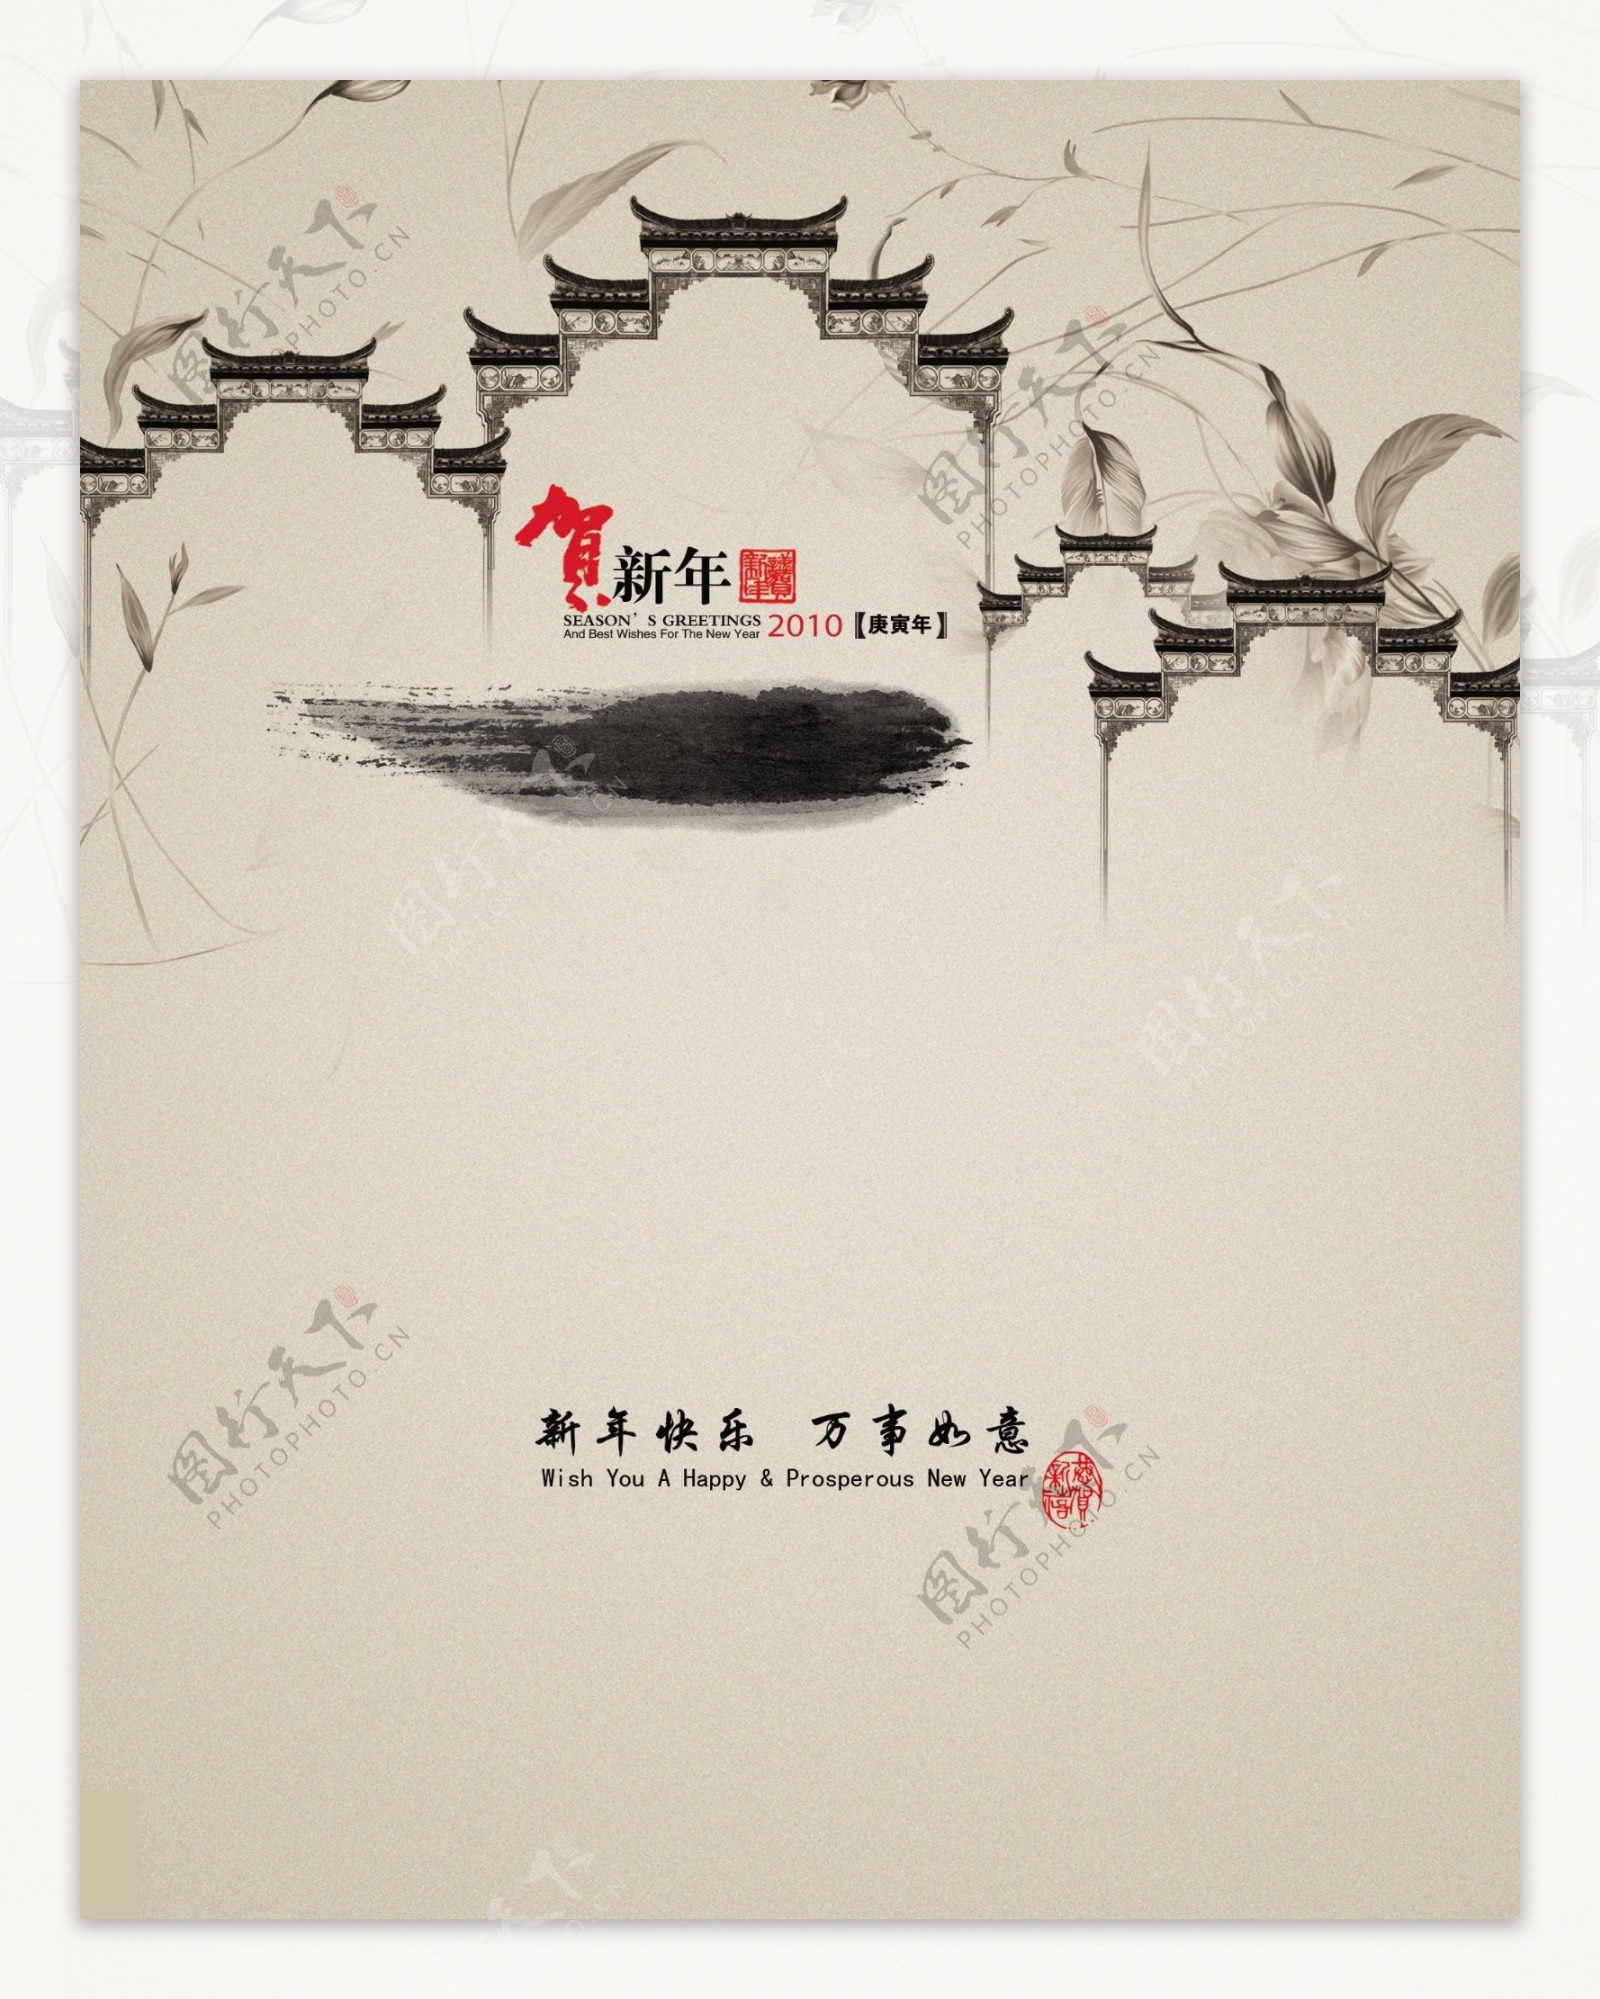 保险公司新年贺卡2010春节水墨中国风祝贺古典传统节日素材psd分层素材图片